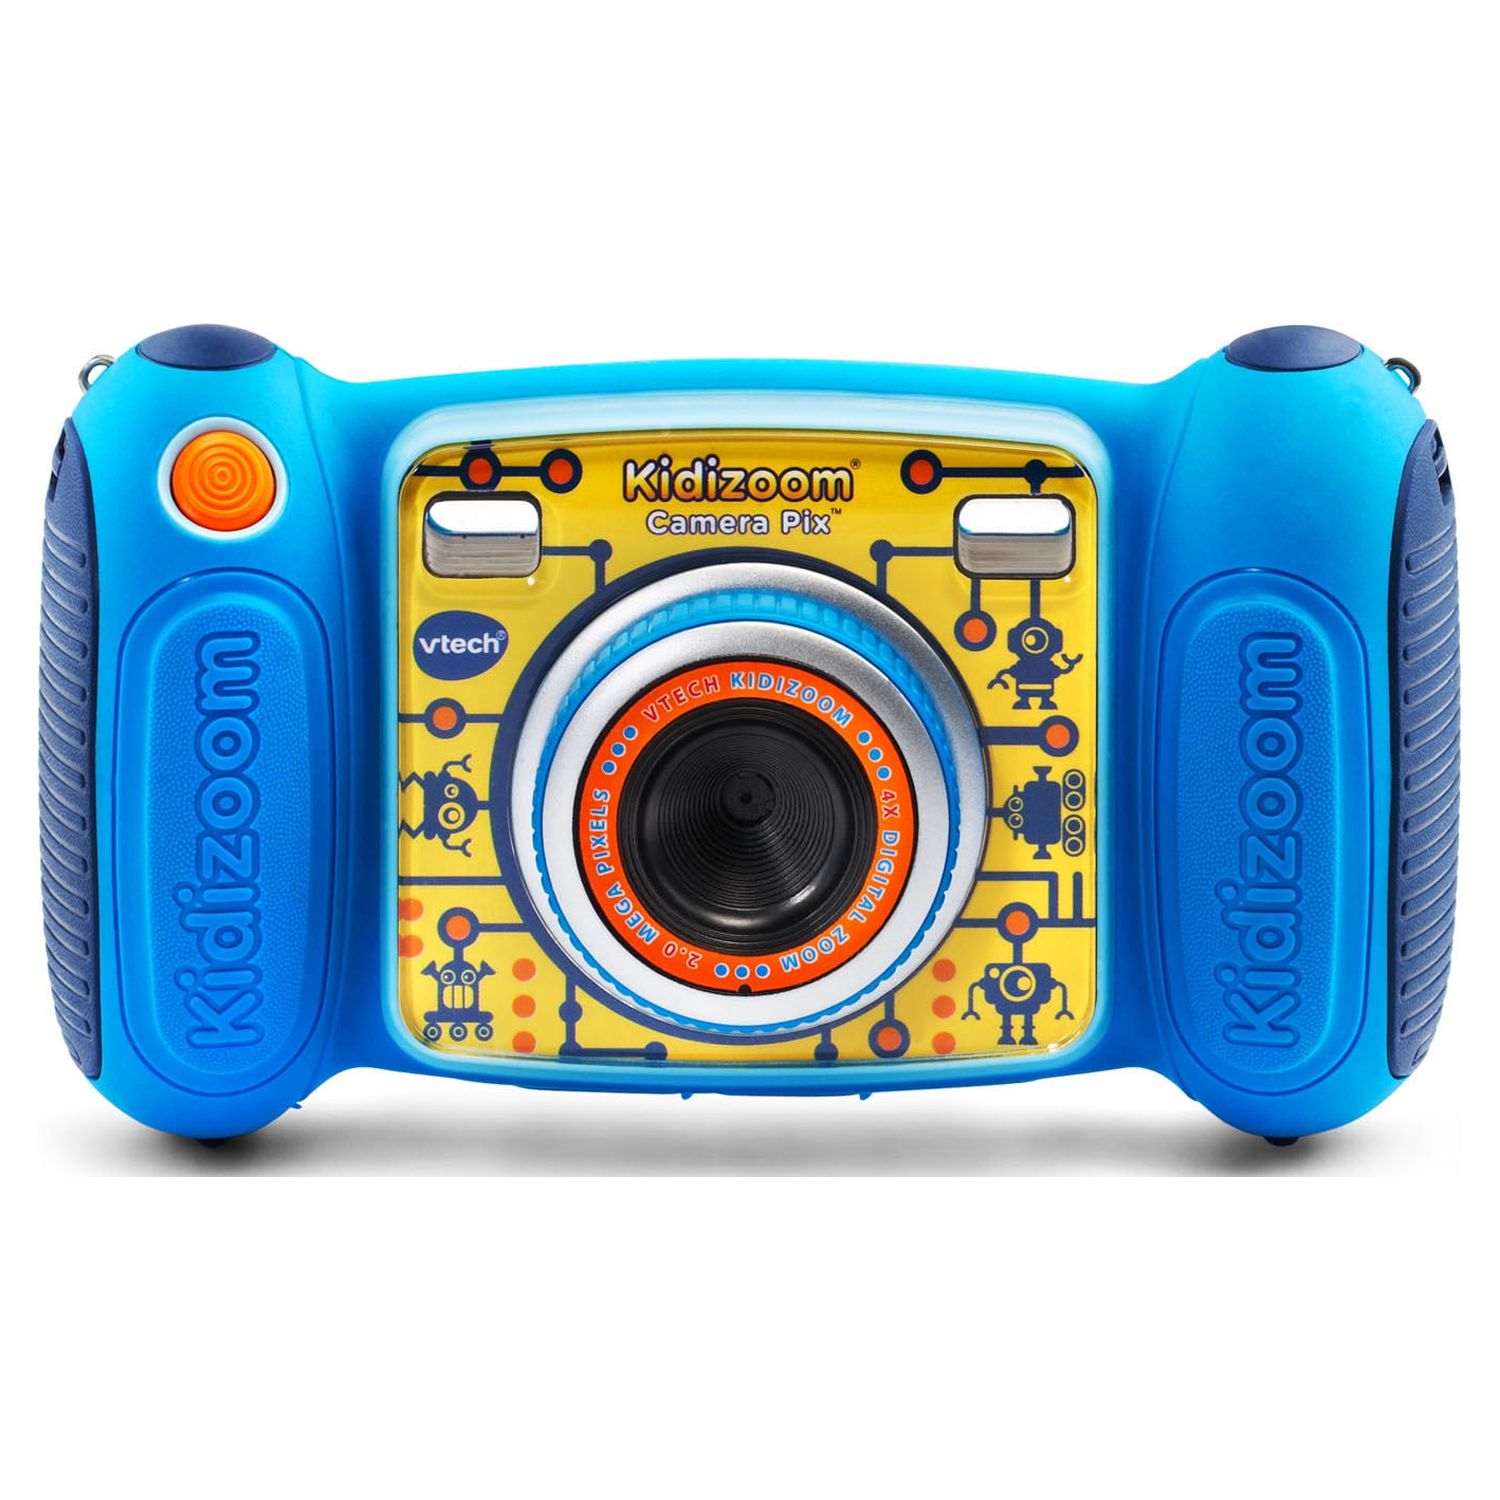 VTech KidiZoom Camera Pix, Real Digital Camera for Kids, Blue - image 1 of 10